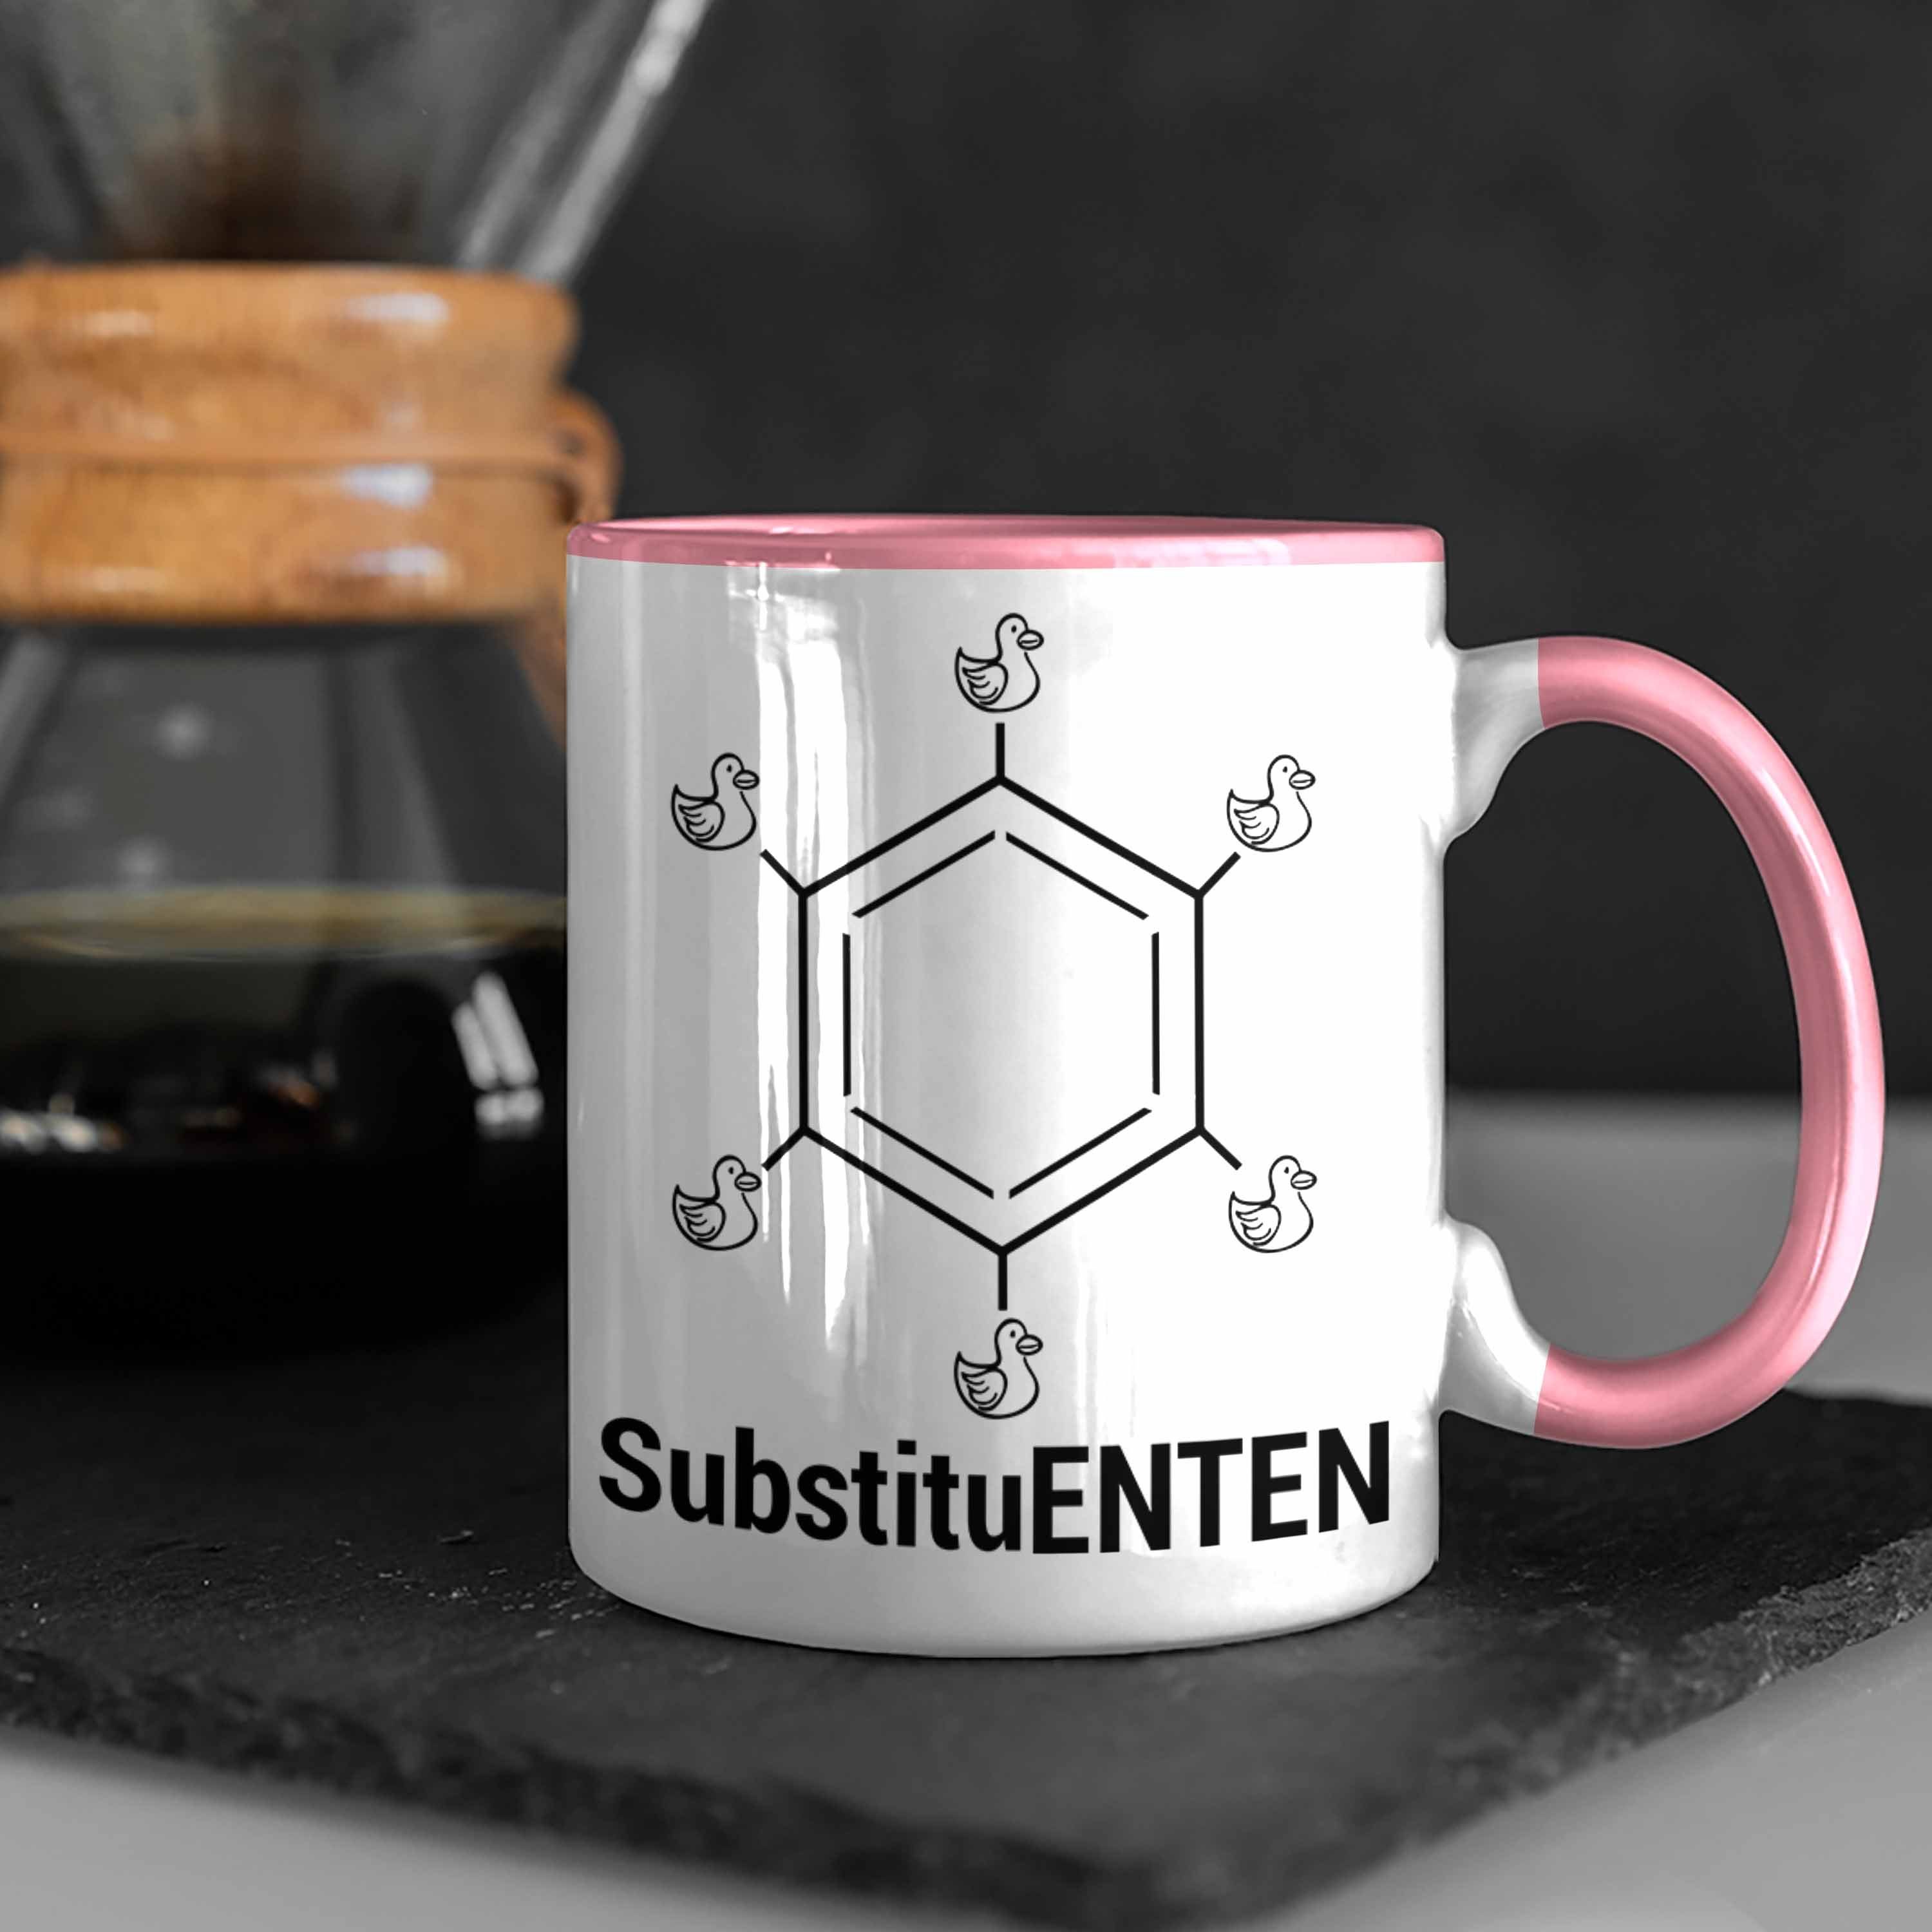 Trendation Tasse Chemie Rosa Chemie Ente Tasse Witz Kaffee SubstituENTEN Chemiker Organische